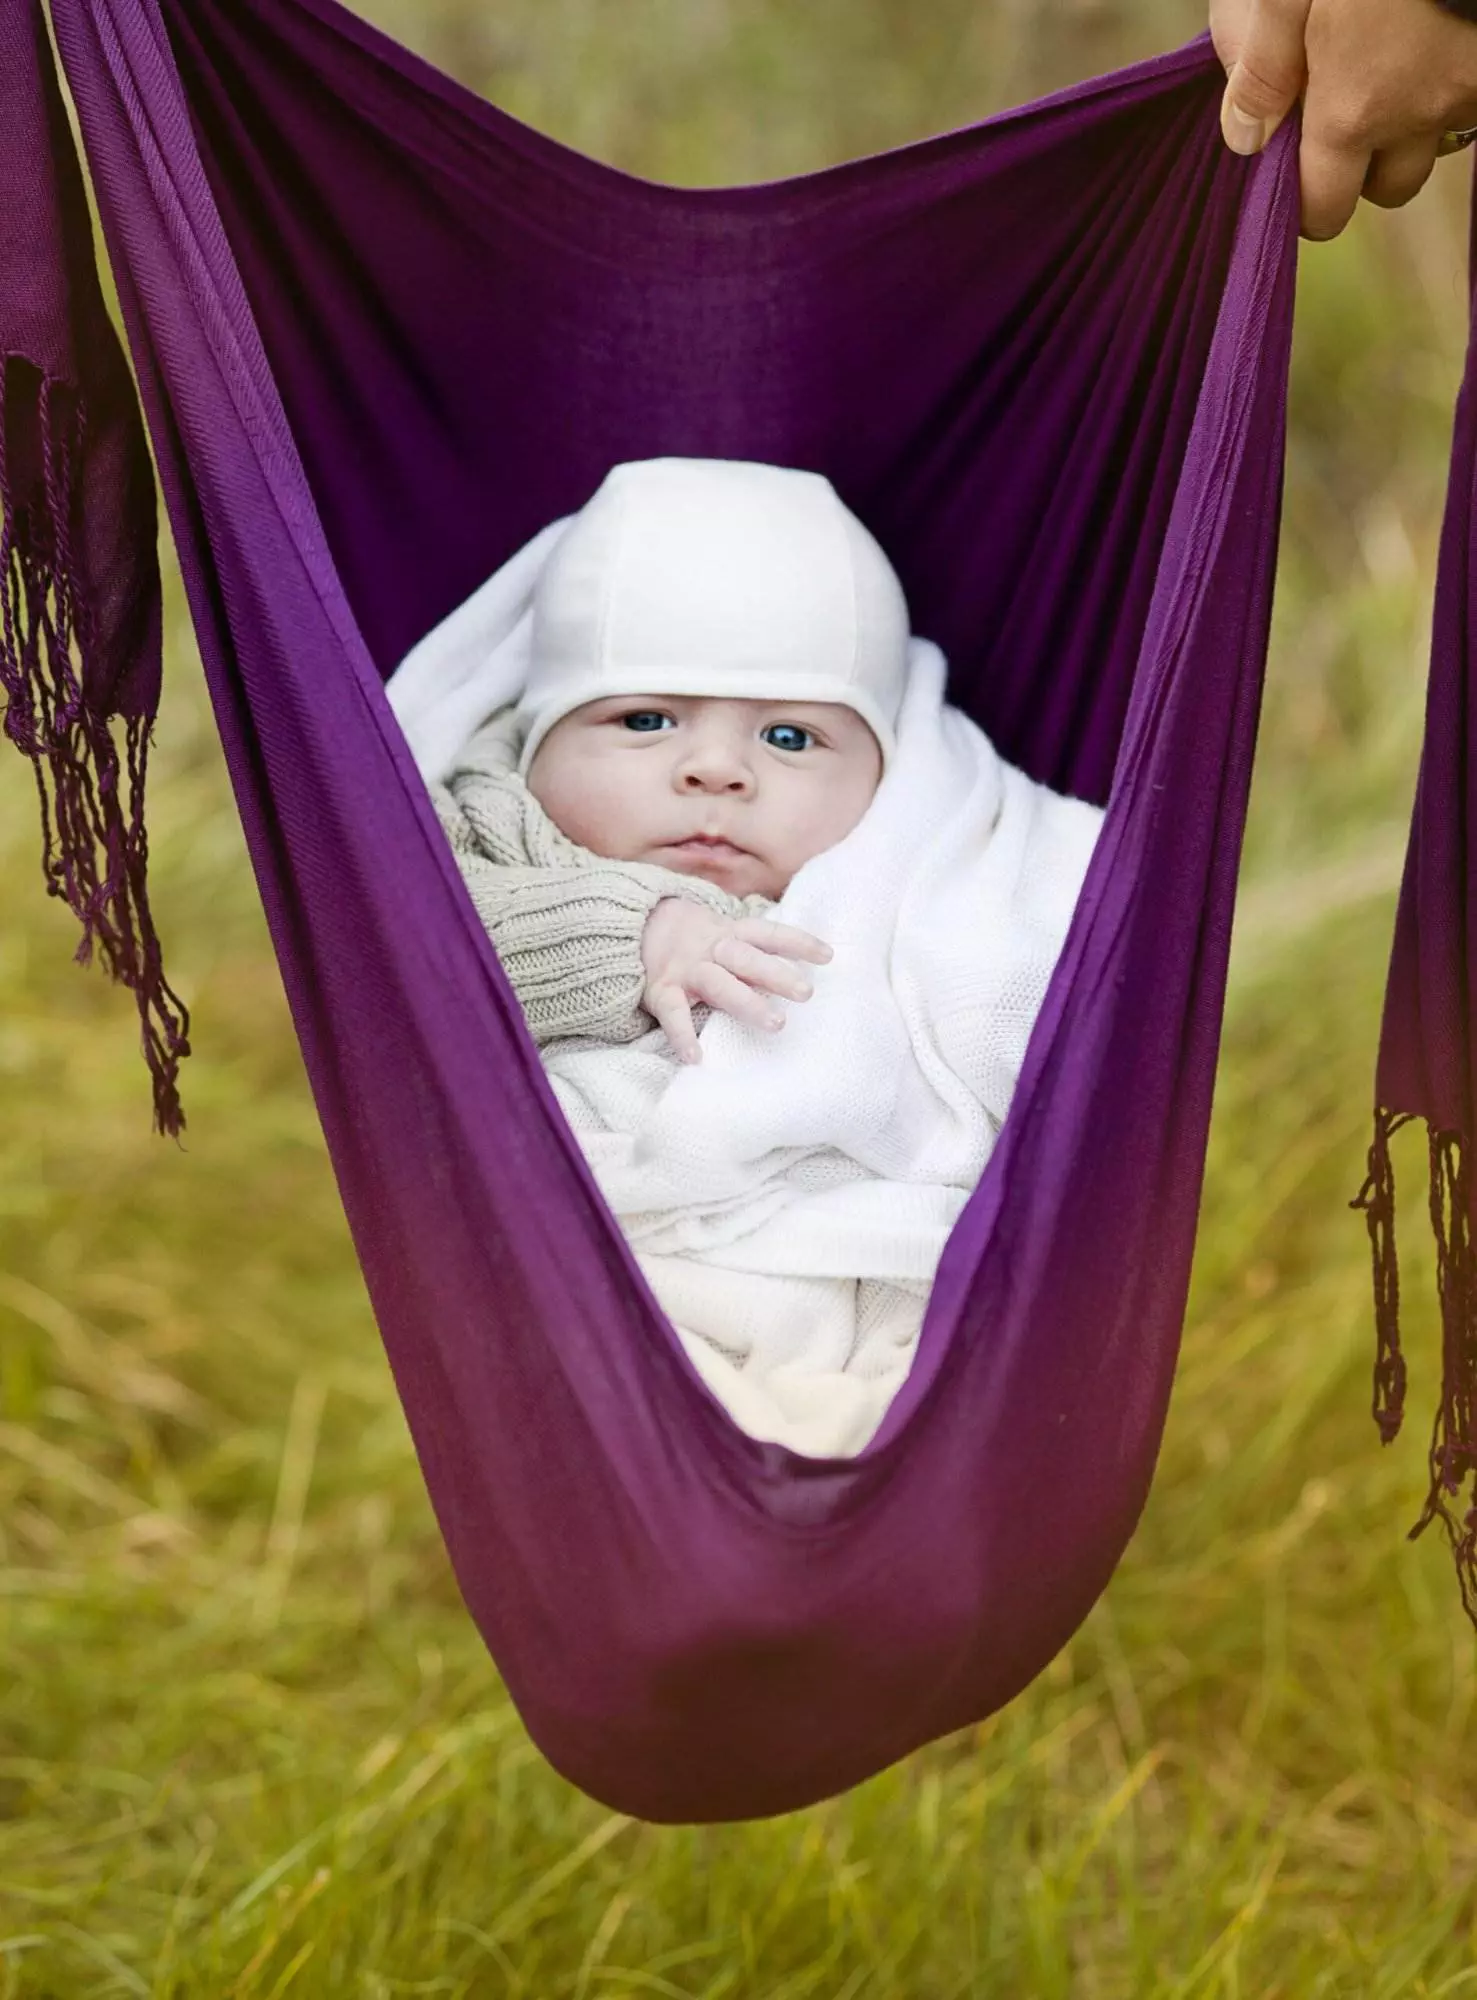 Baby in purple hammock outdoors